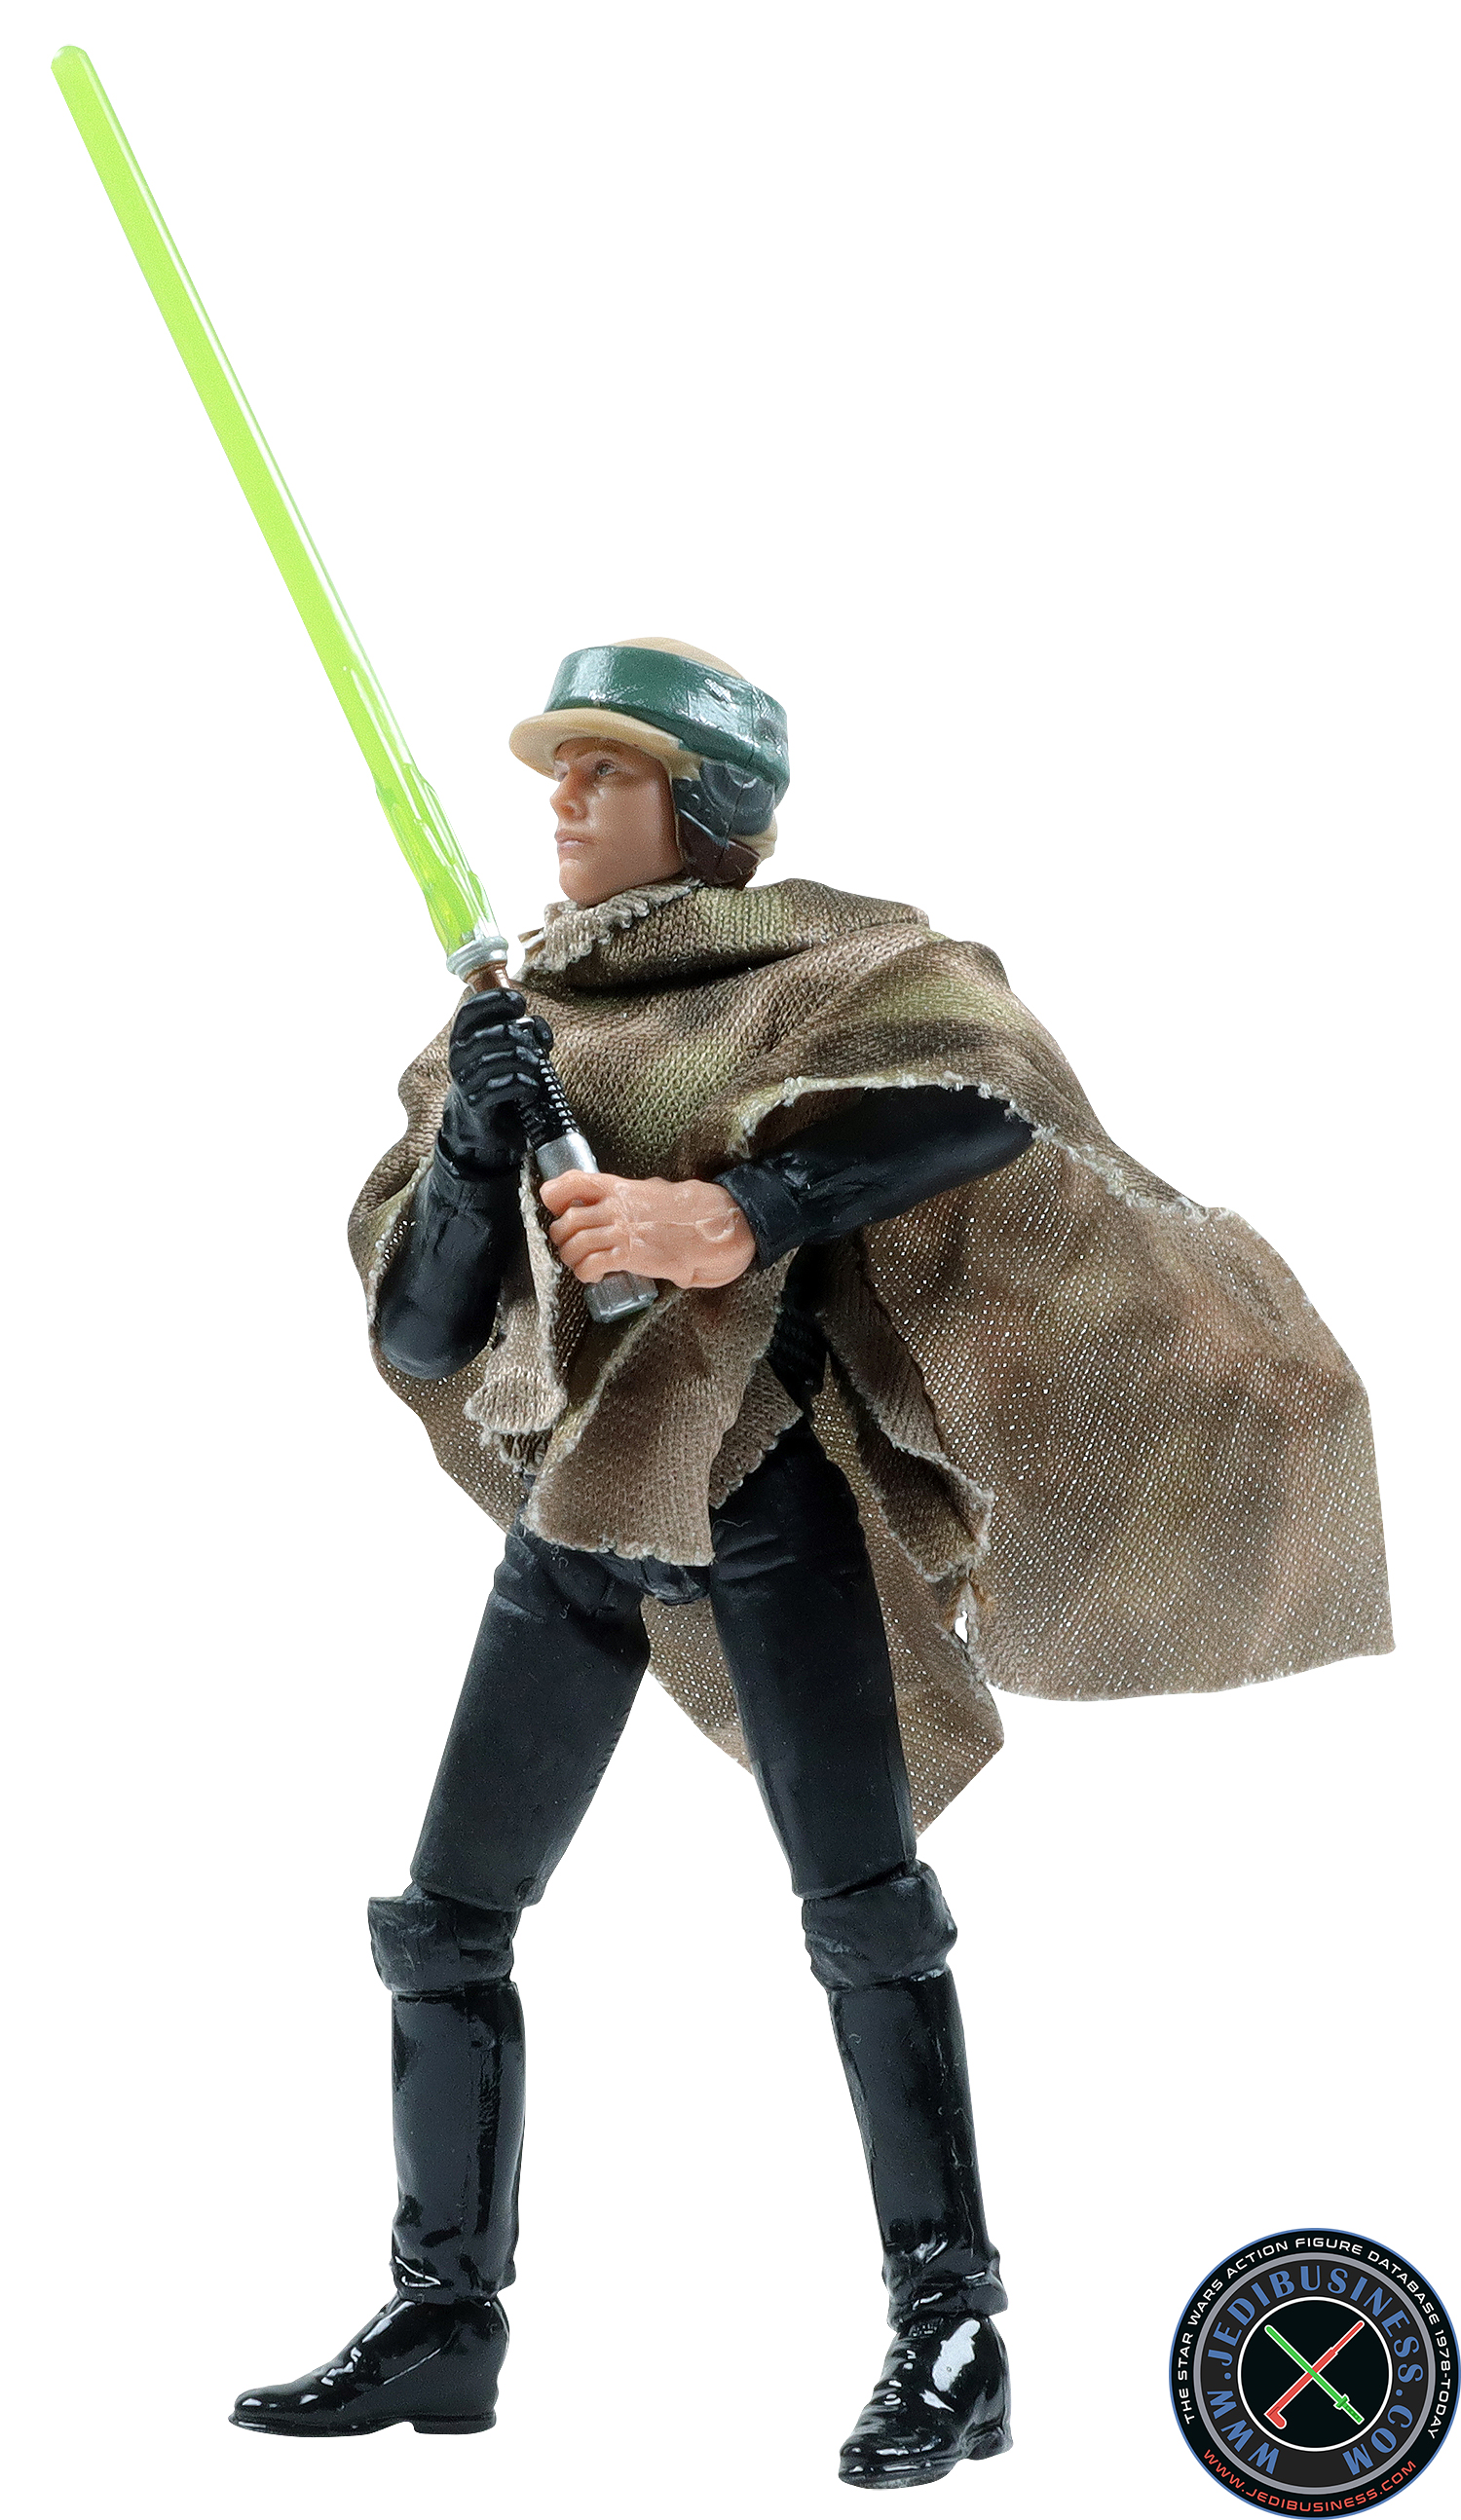 Luke Skywalker Endor